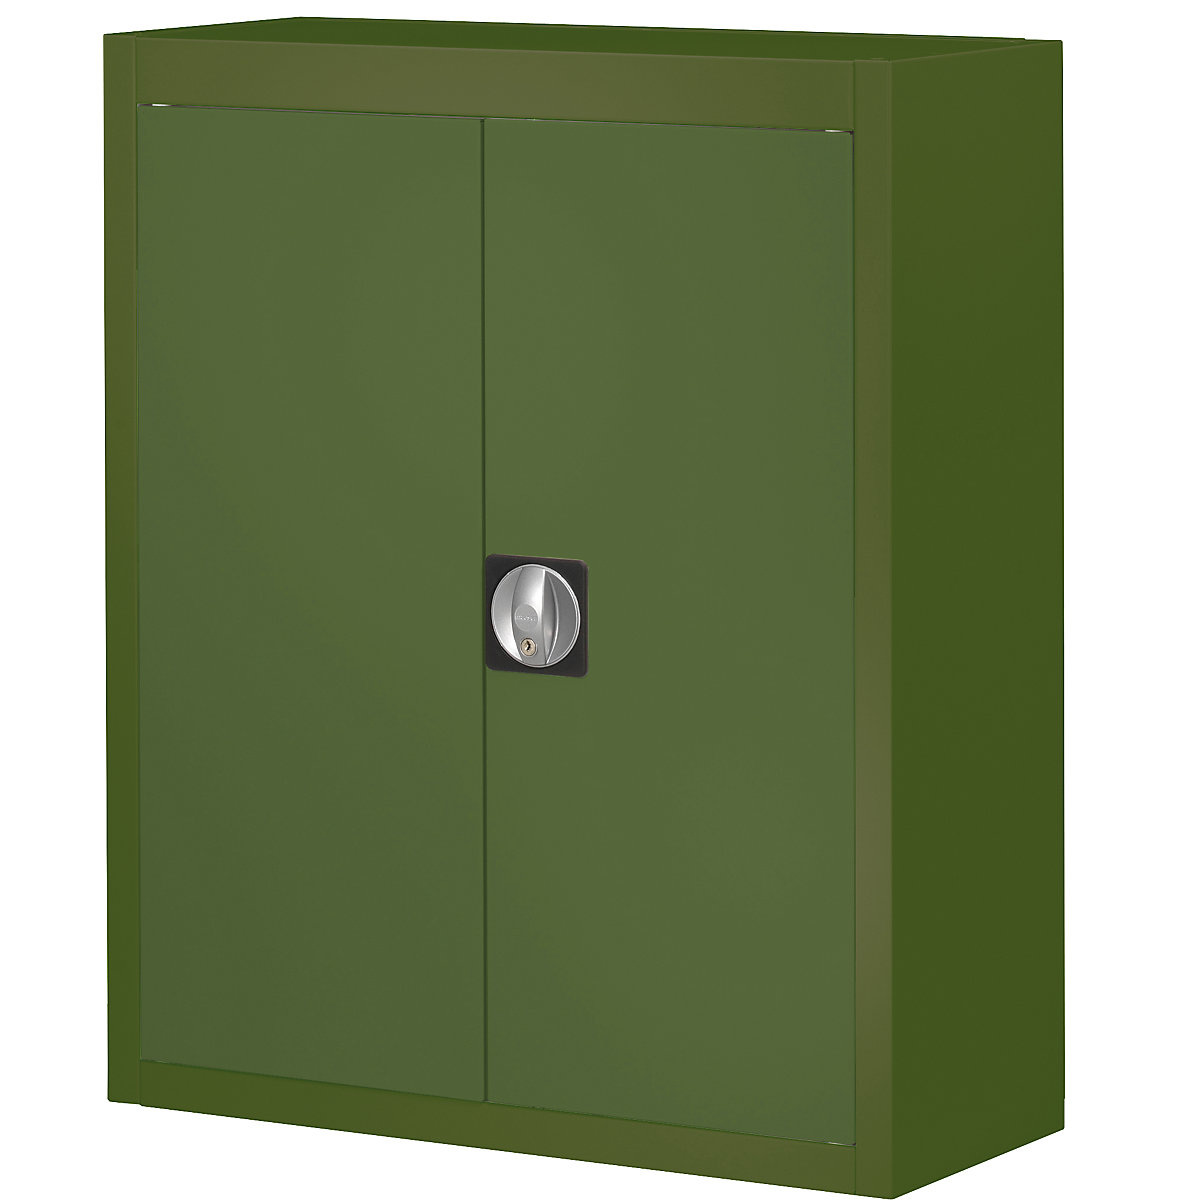 Skladiščna omara, brez odprtih skladiščnih posod – mauser, VxŠxG 820 x 680 x 280 mm, ena barva, zelena-4